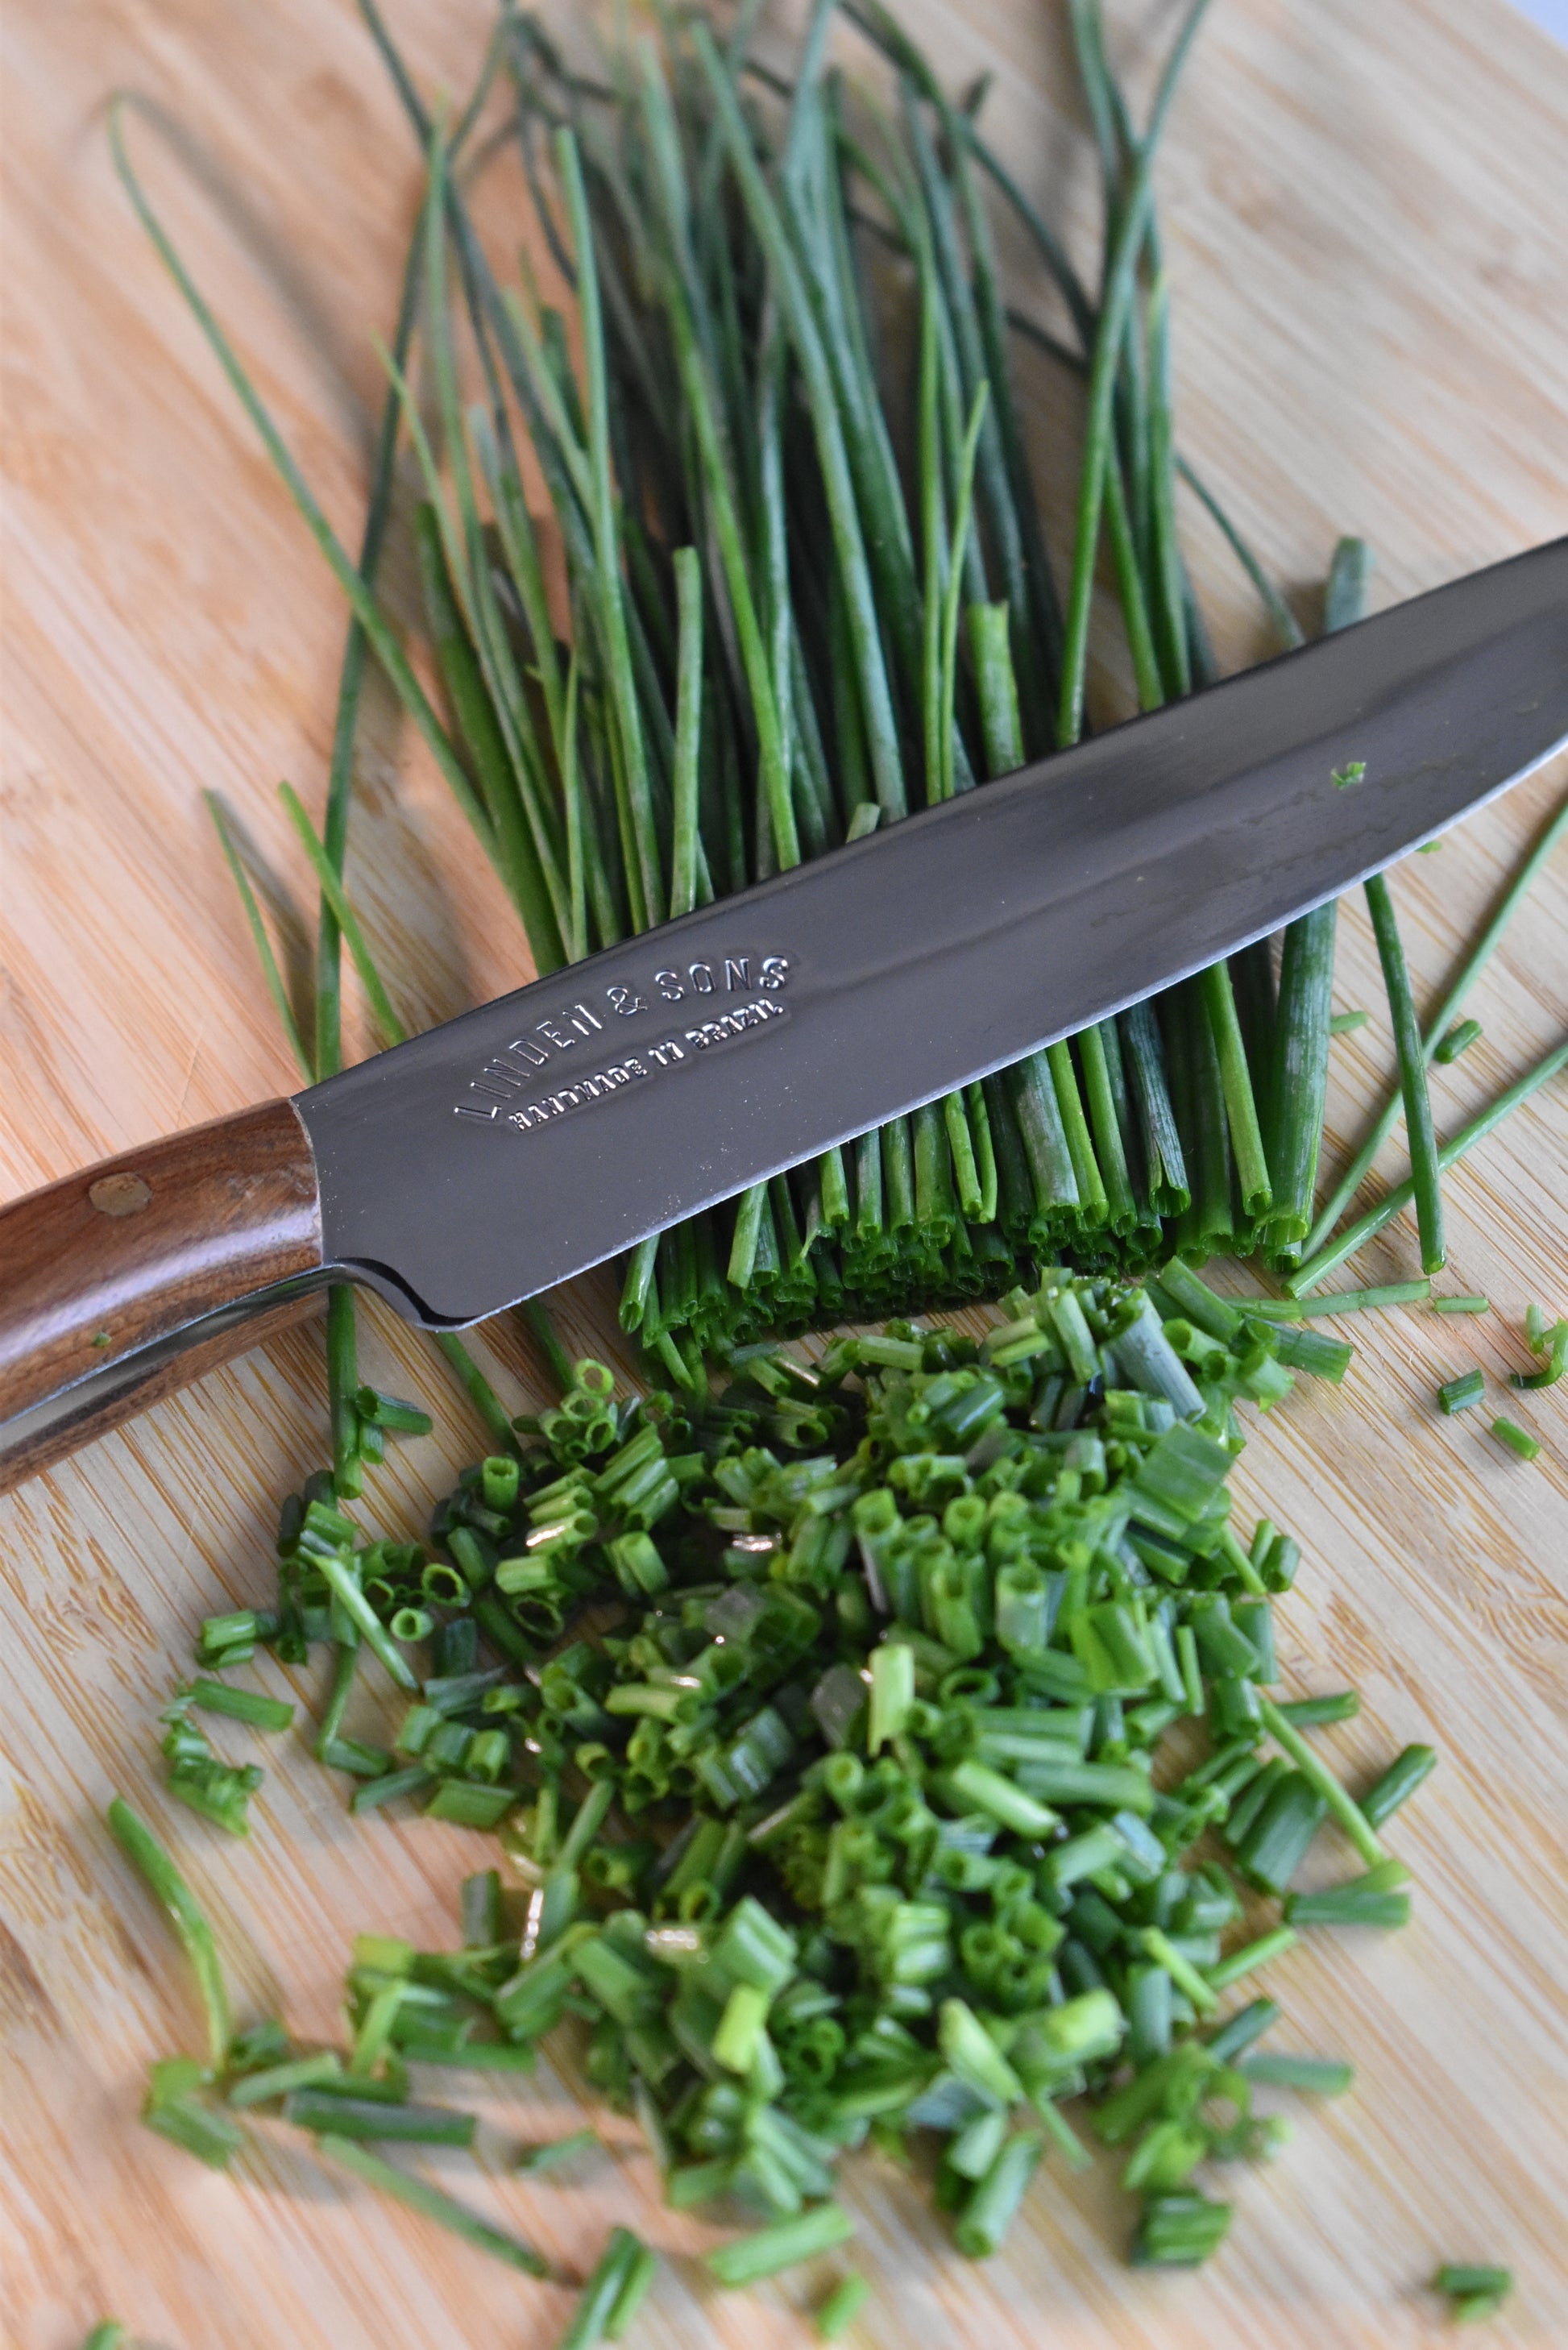 6 Chef's Paring Knife – lindenandsons